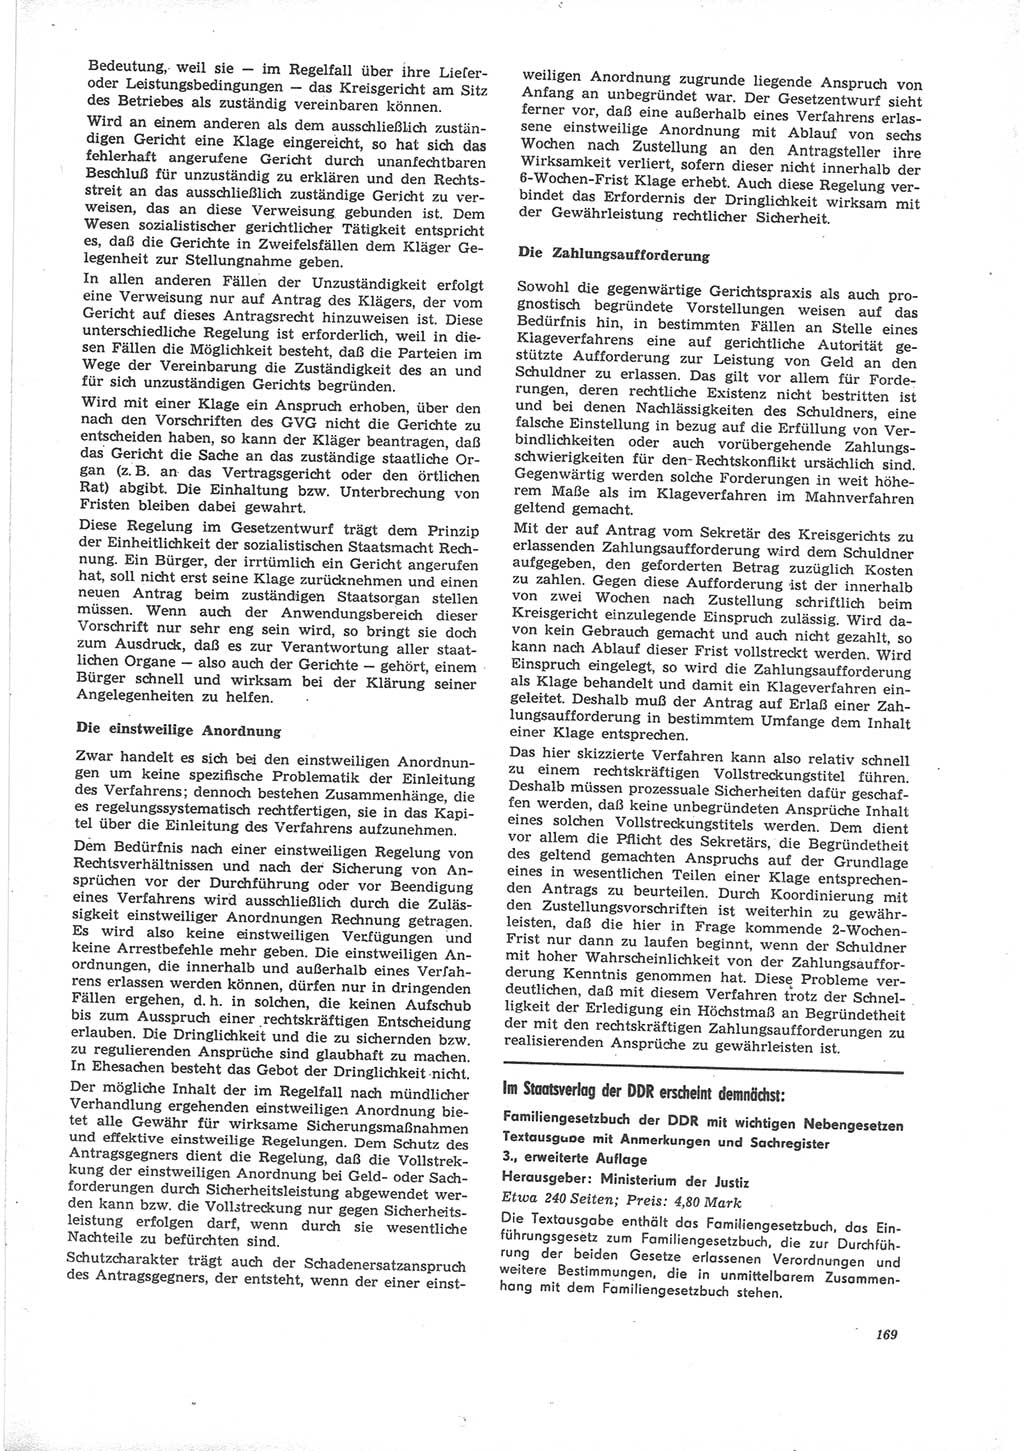 Neue Justiz (NJ), Zeitschrift für Recht und Rechtswissenschaft [Deutsche Demokratische Republik (DDR)], 24. Jahrgang 1970, Seite 169 (NJ DDR 1970, S. 169)